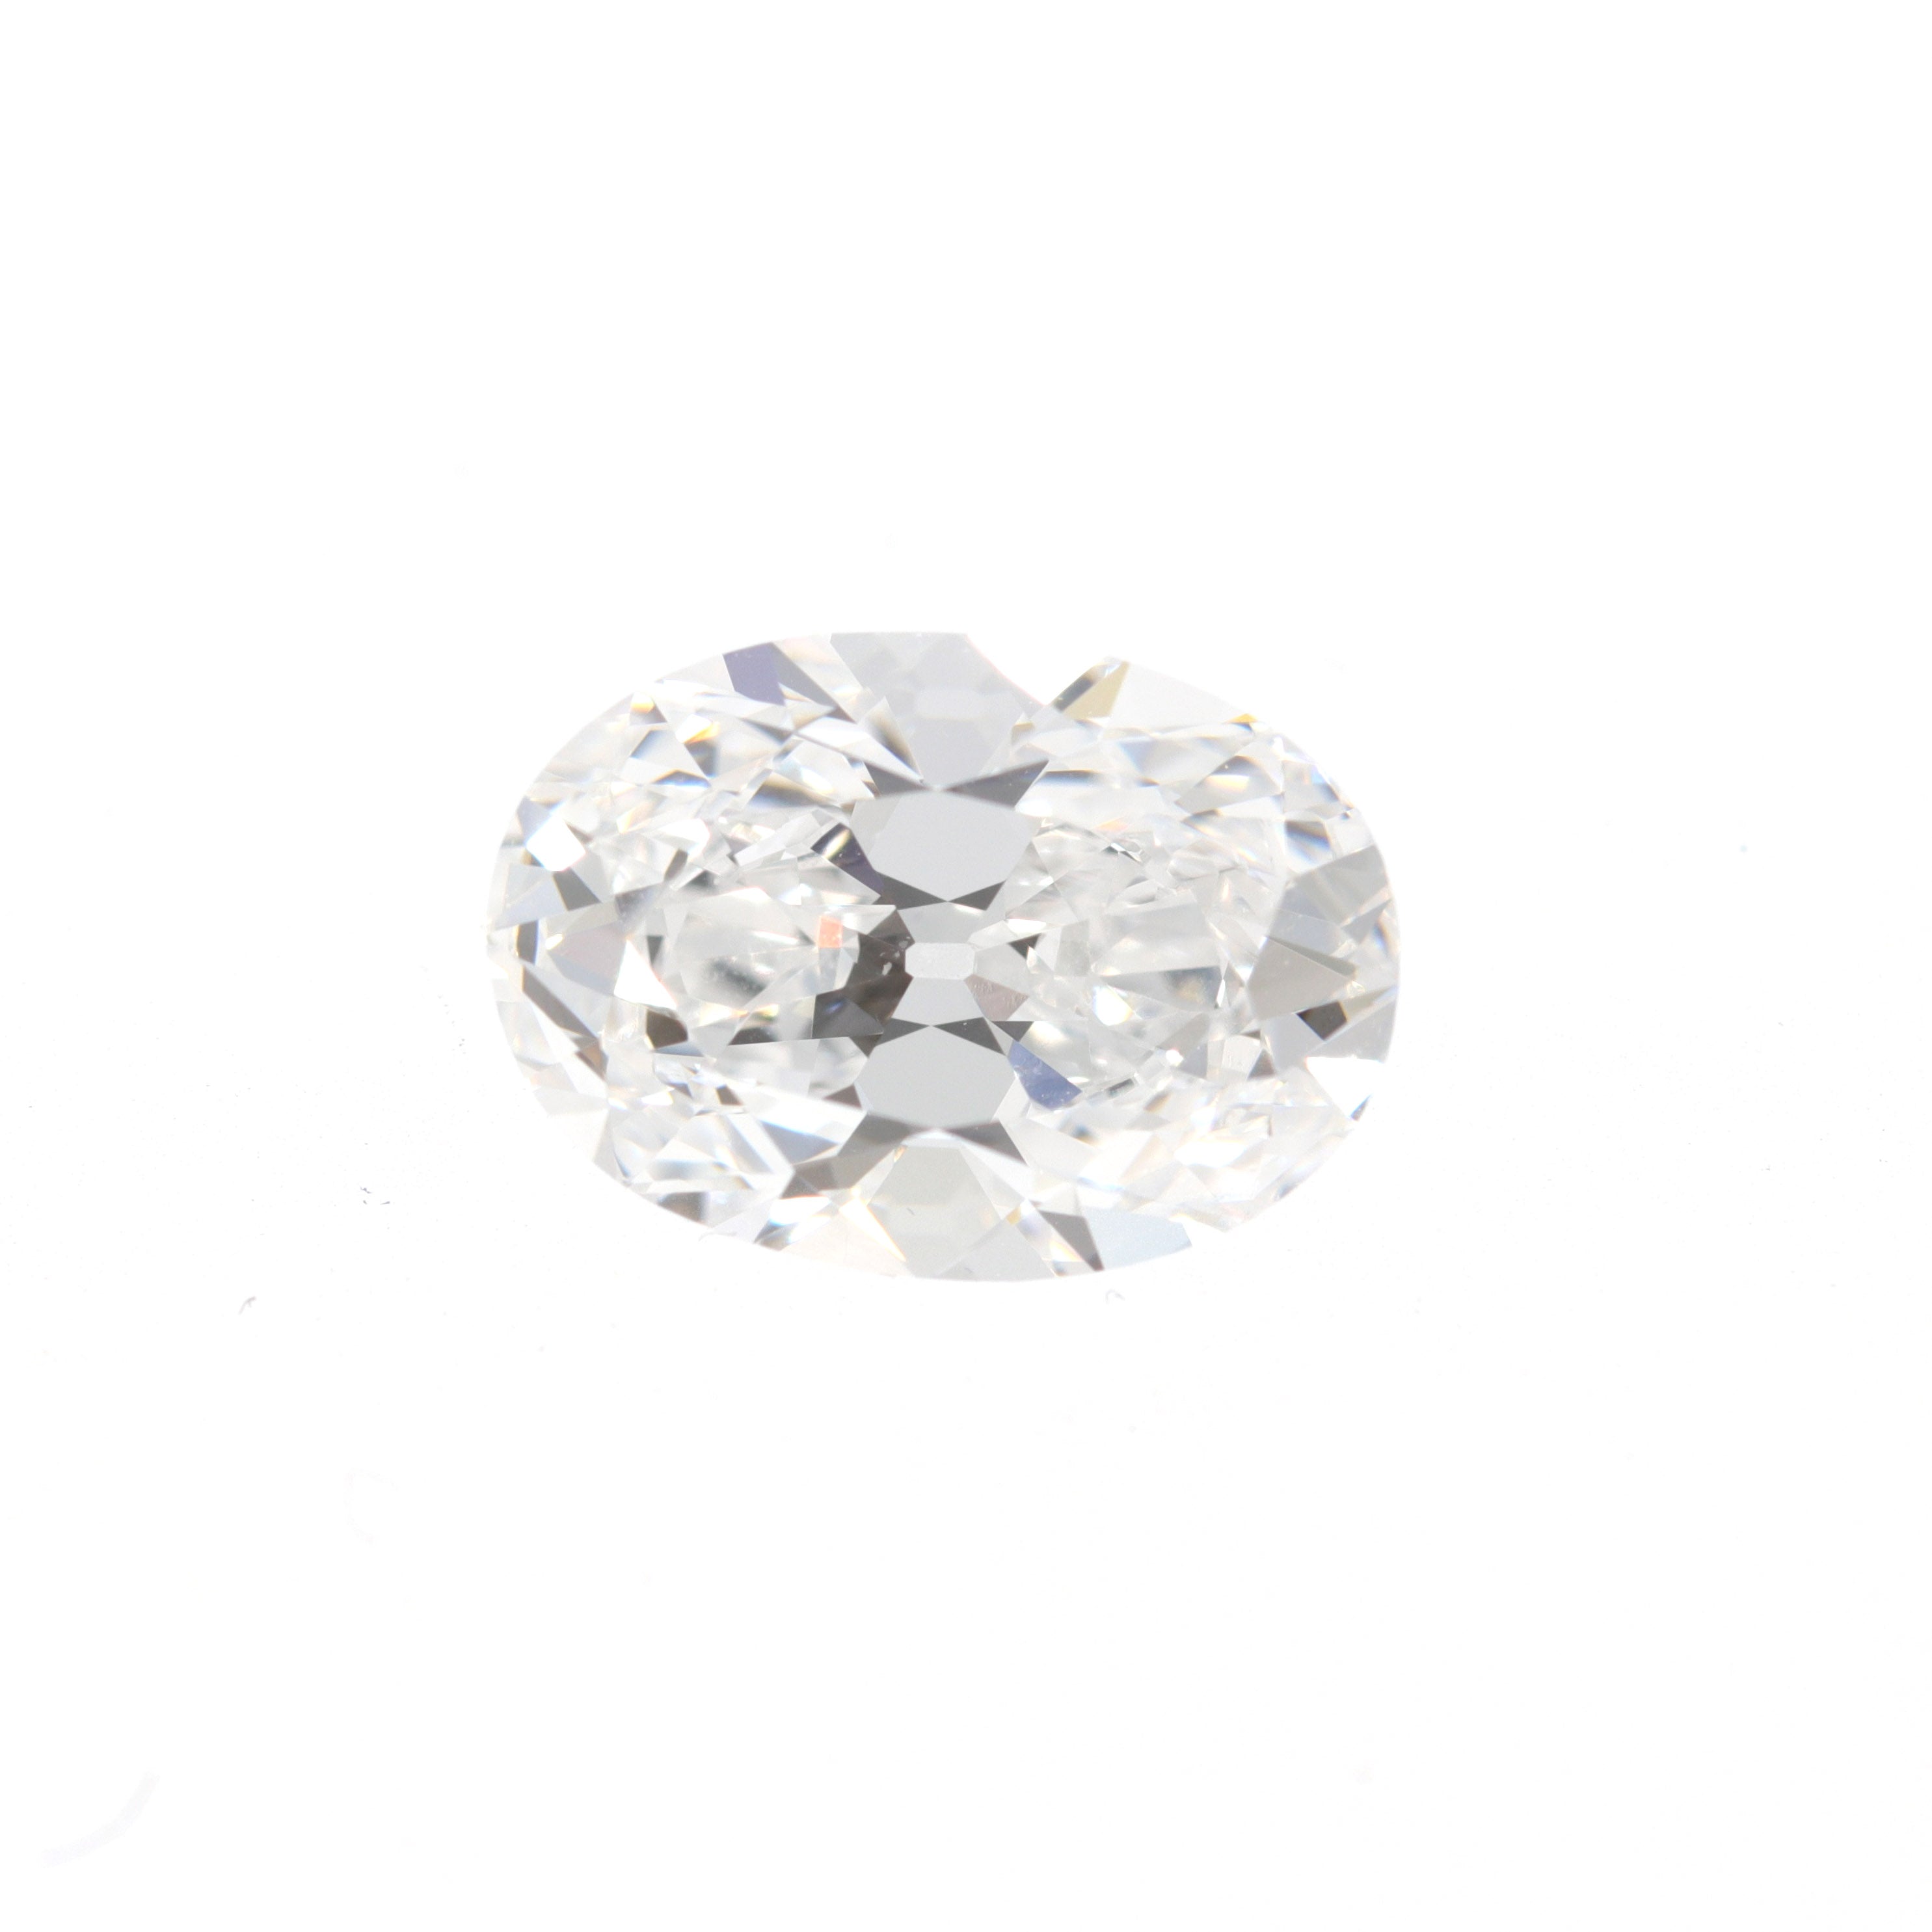 example of a Type IIa diamond